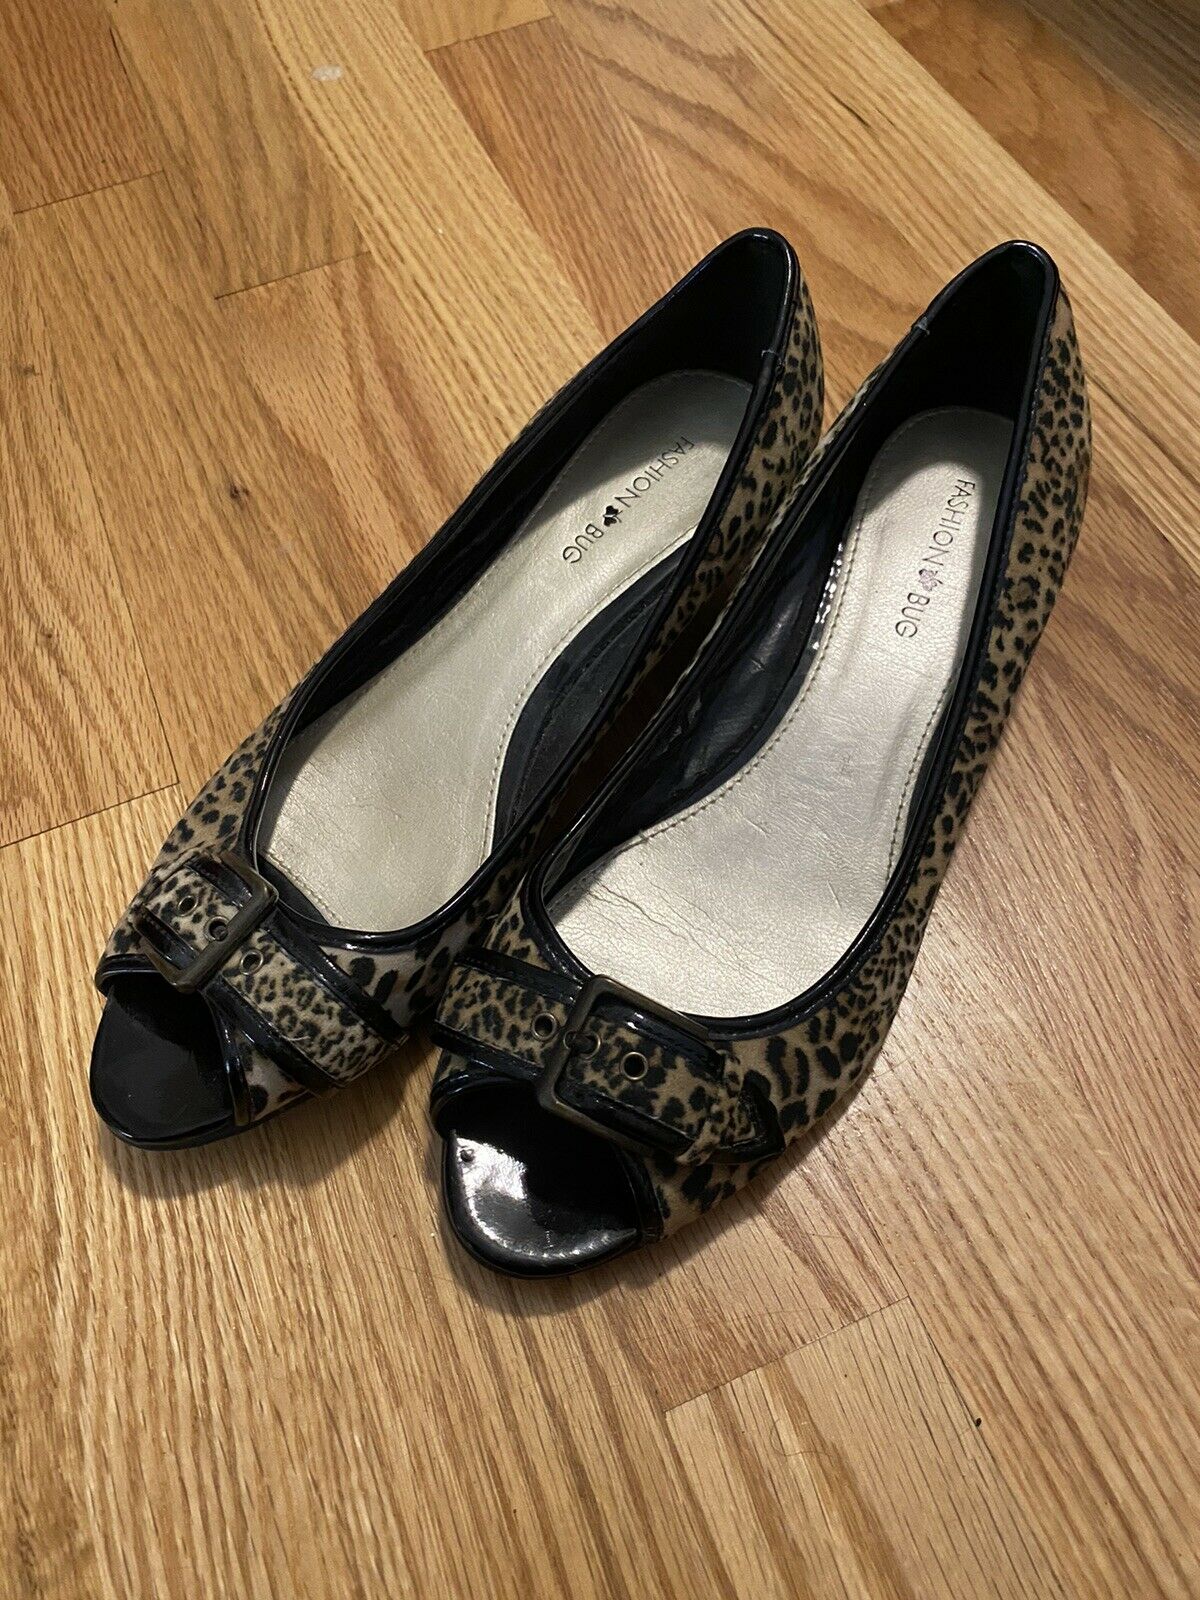 Fashion Bug Leopard Print Women’s Kitten Heel Shoe Size 8W Y2K Fashion 90s 2000s